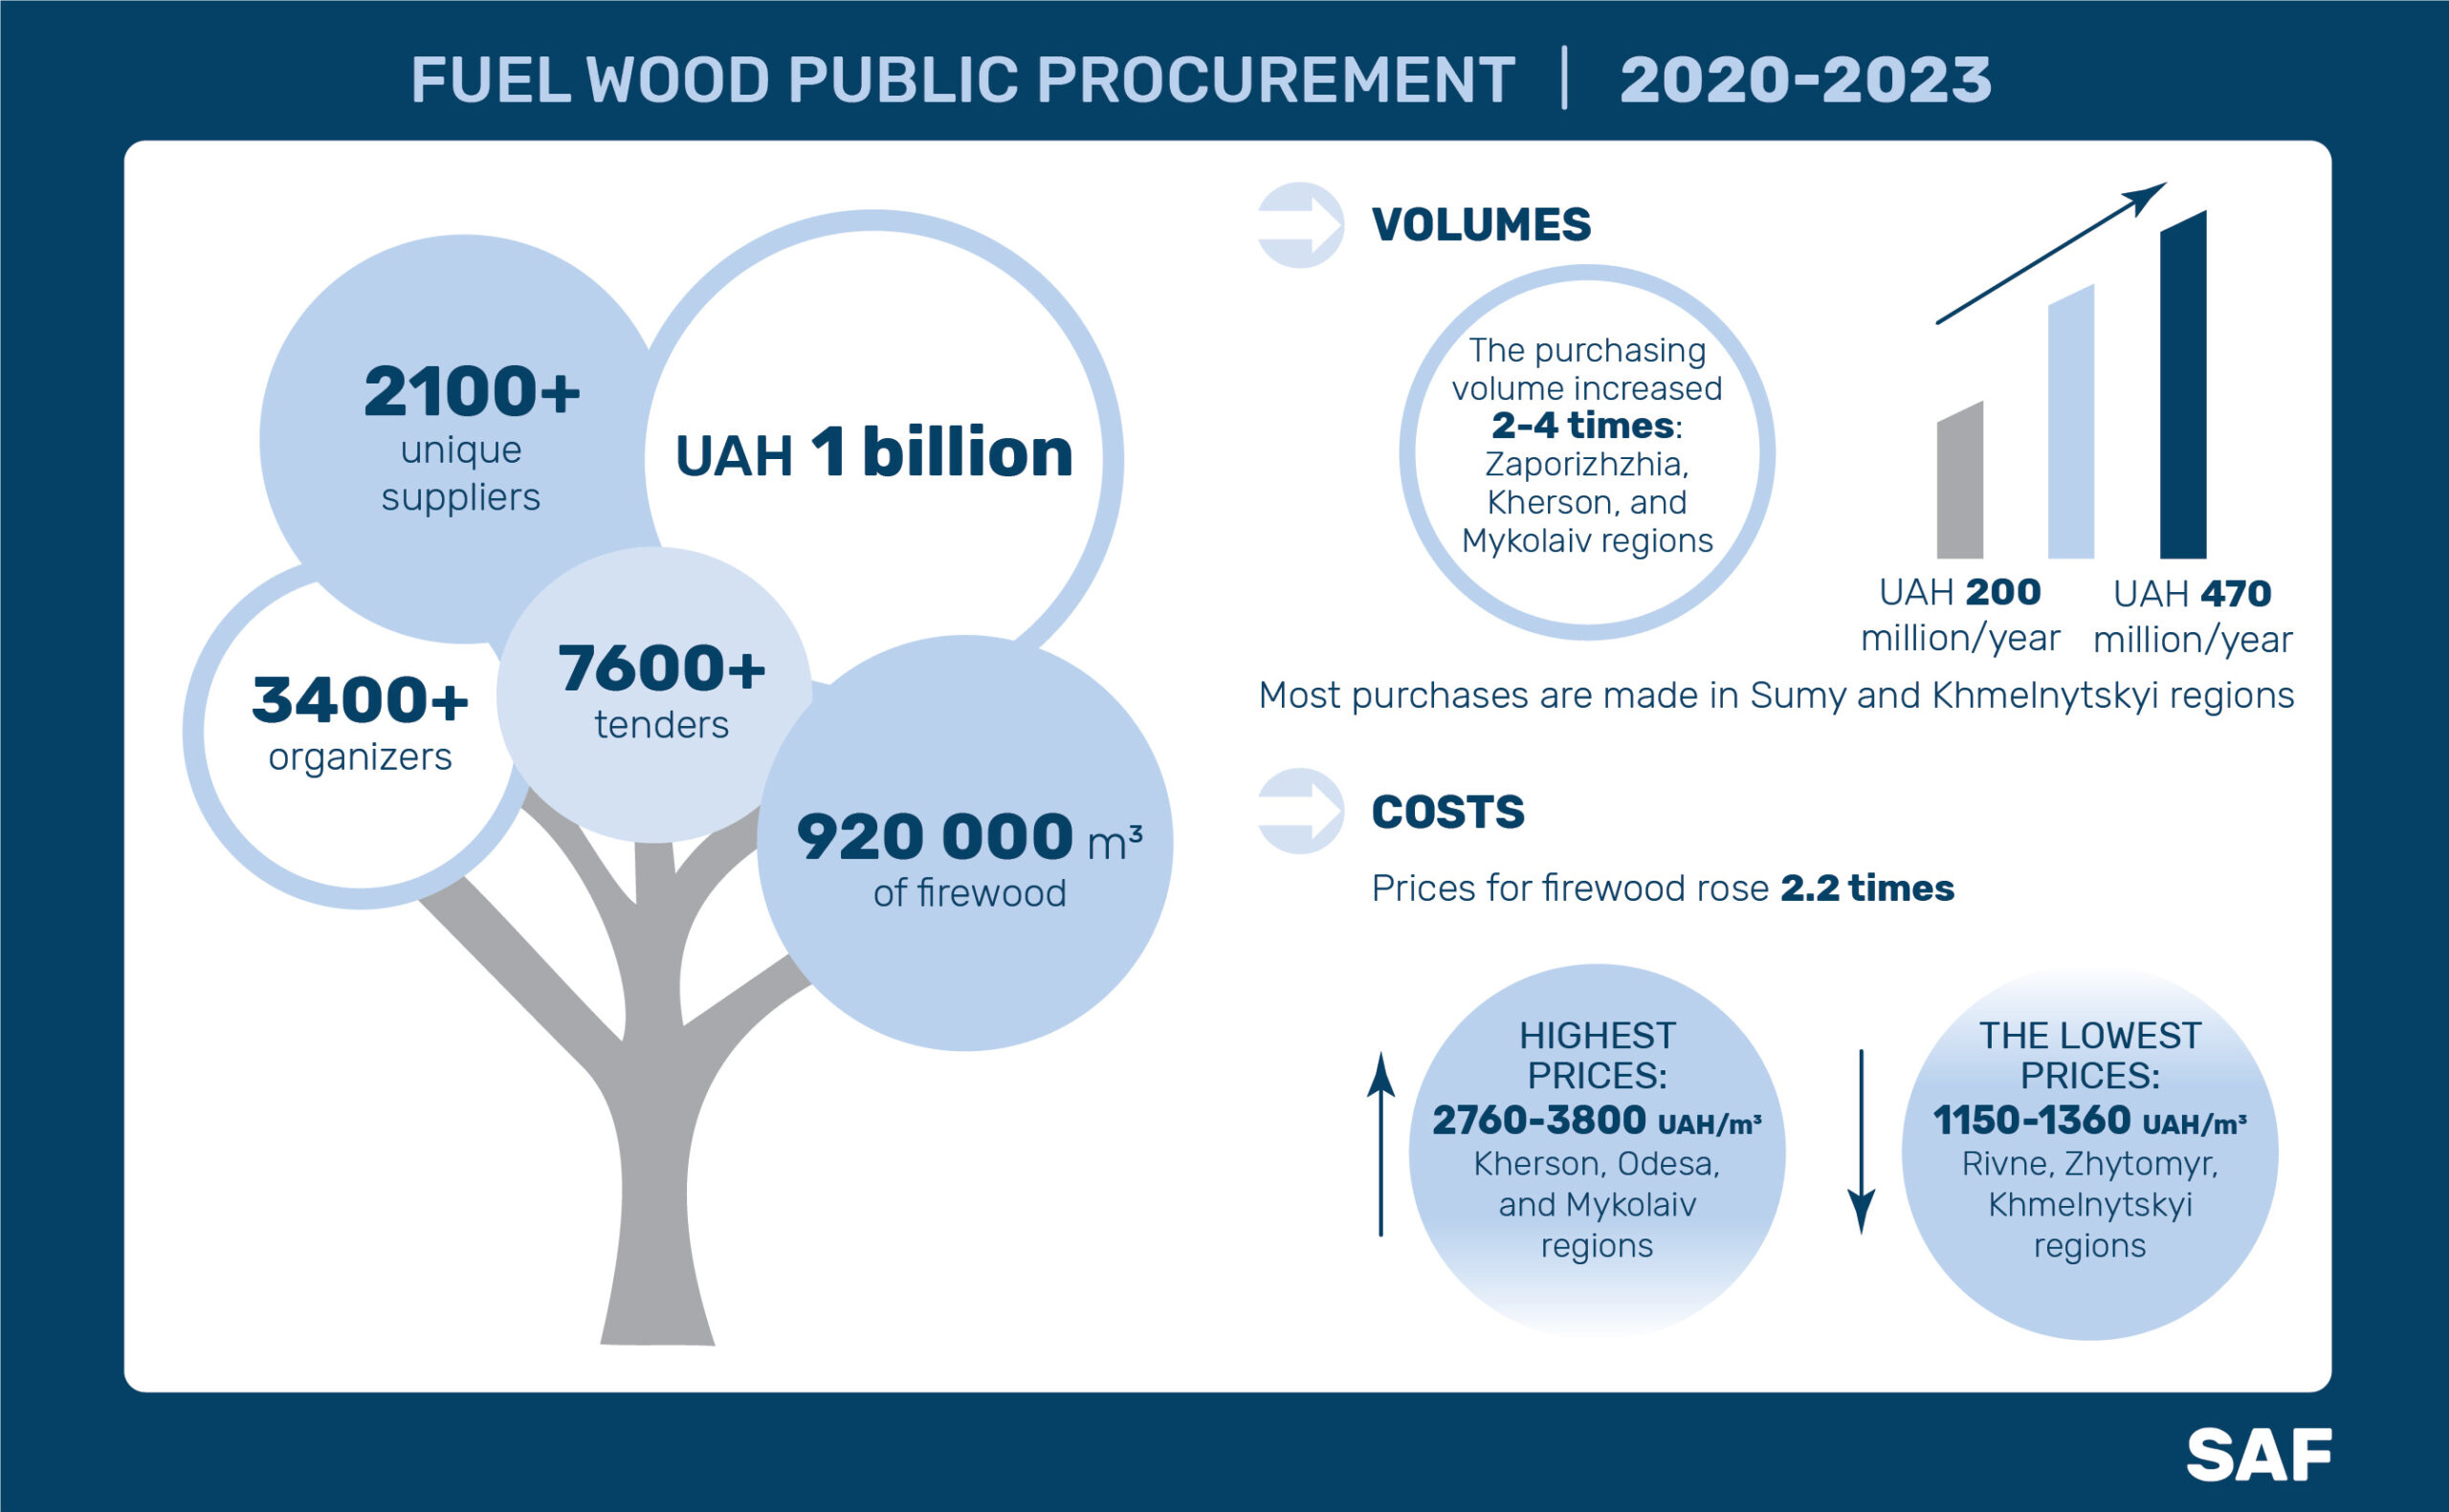 public procurement of fuel wood